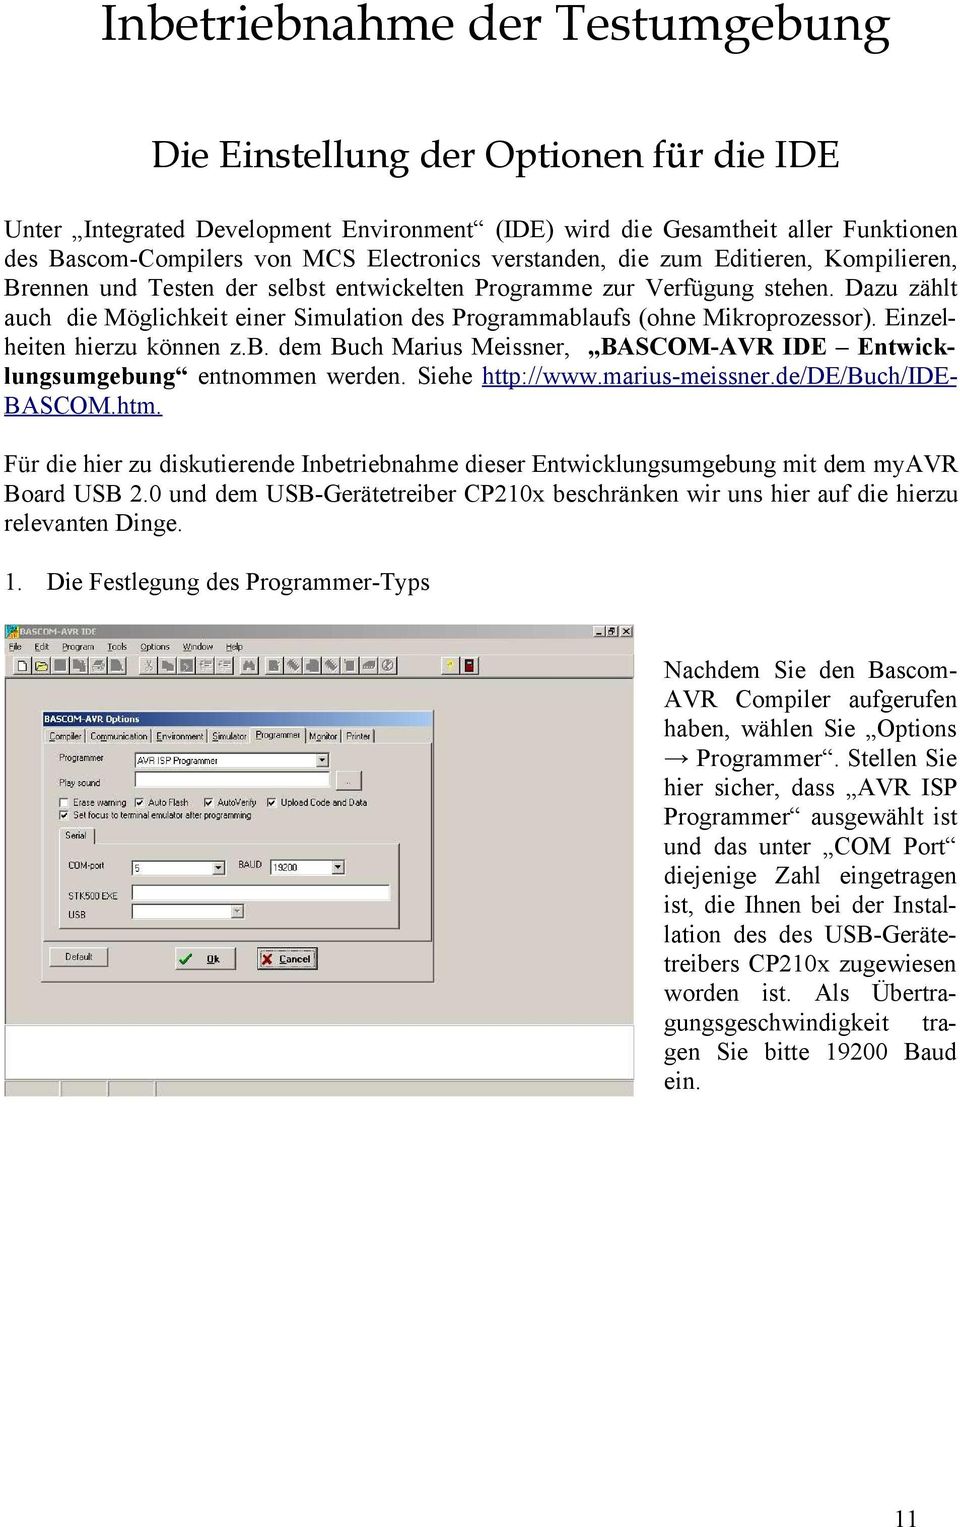 Dazu zählt auch die Möglichkeit einer Simulation des Programmablaufs (ohne Mikroprozessor). Einzelheiten hierzu können z.b. dem Buch Marius Meissner, BASCOM-AVR IDE Entwicklungsumgebung entnommen werden.